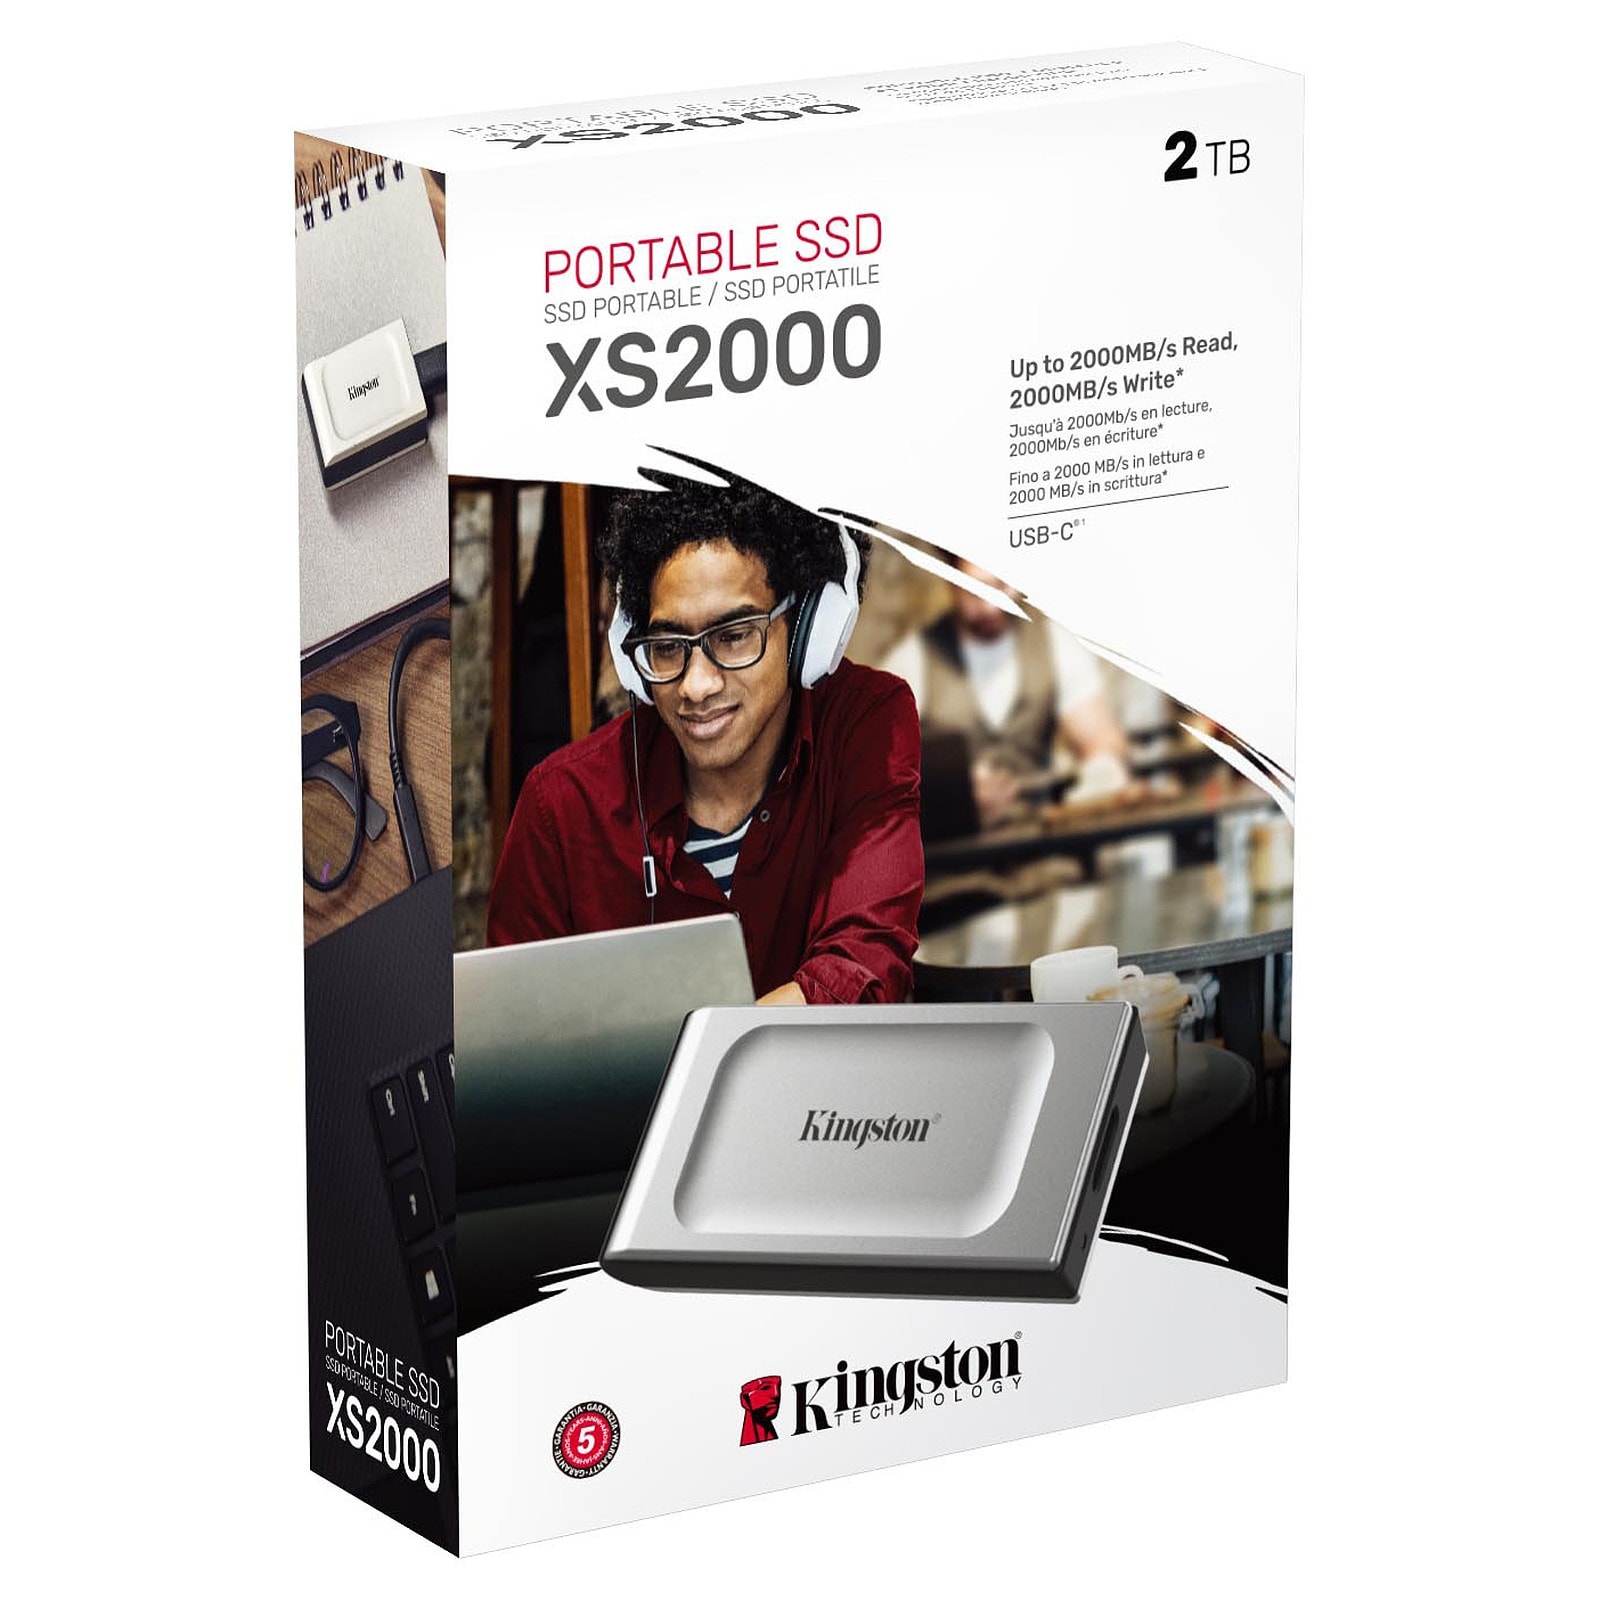 Portable SSD XS2000